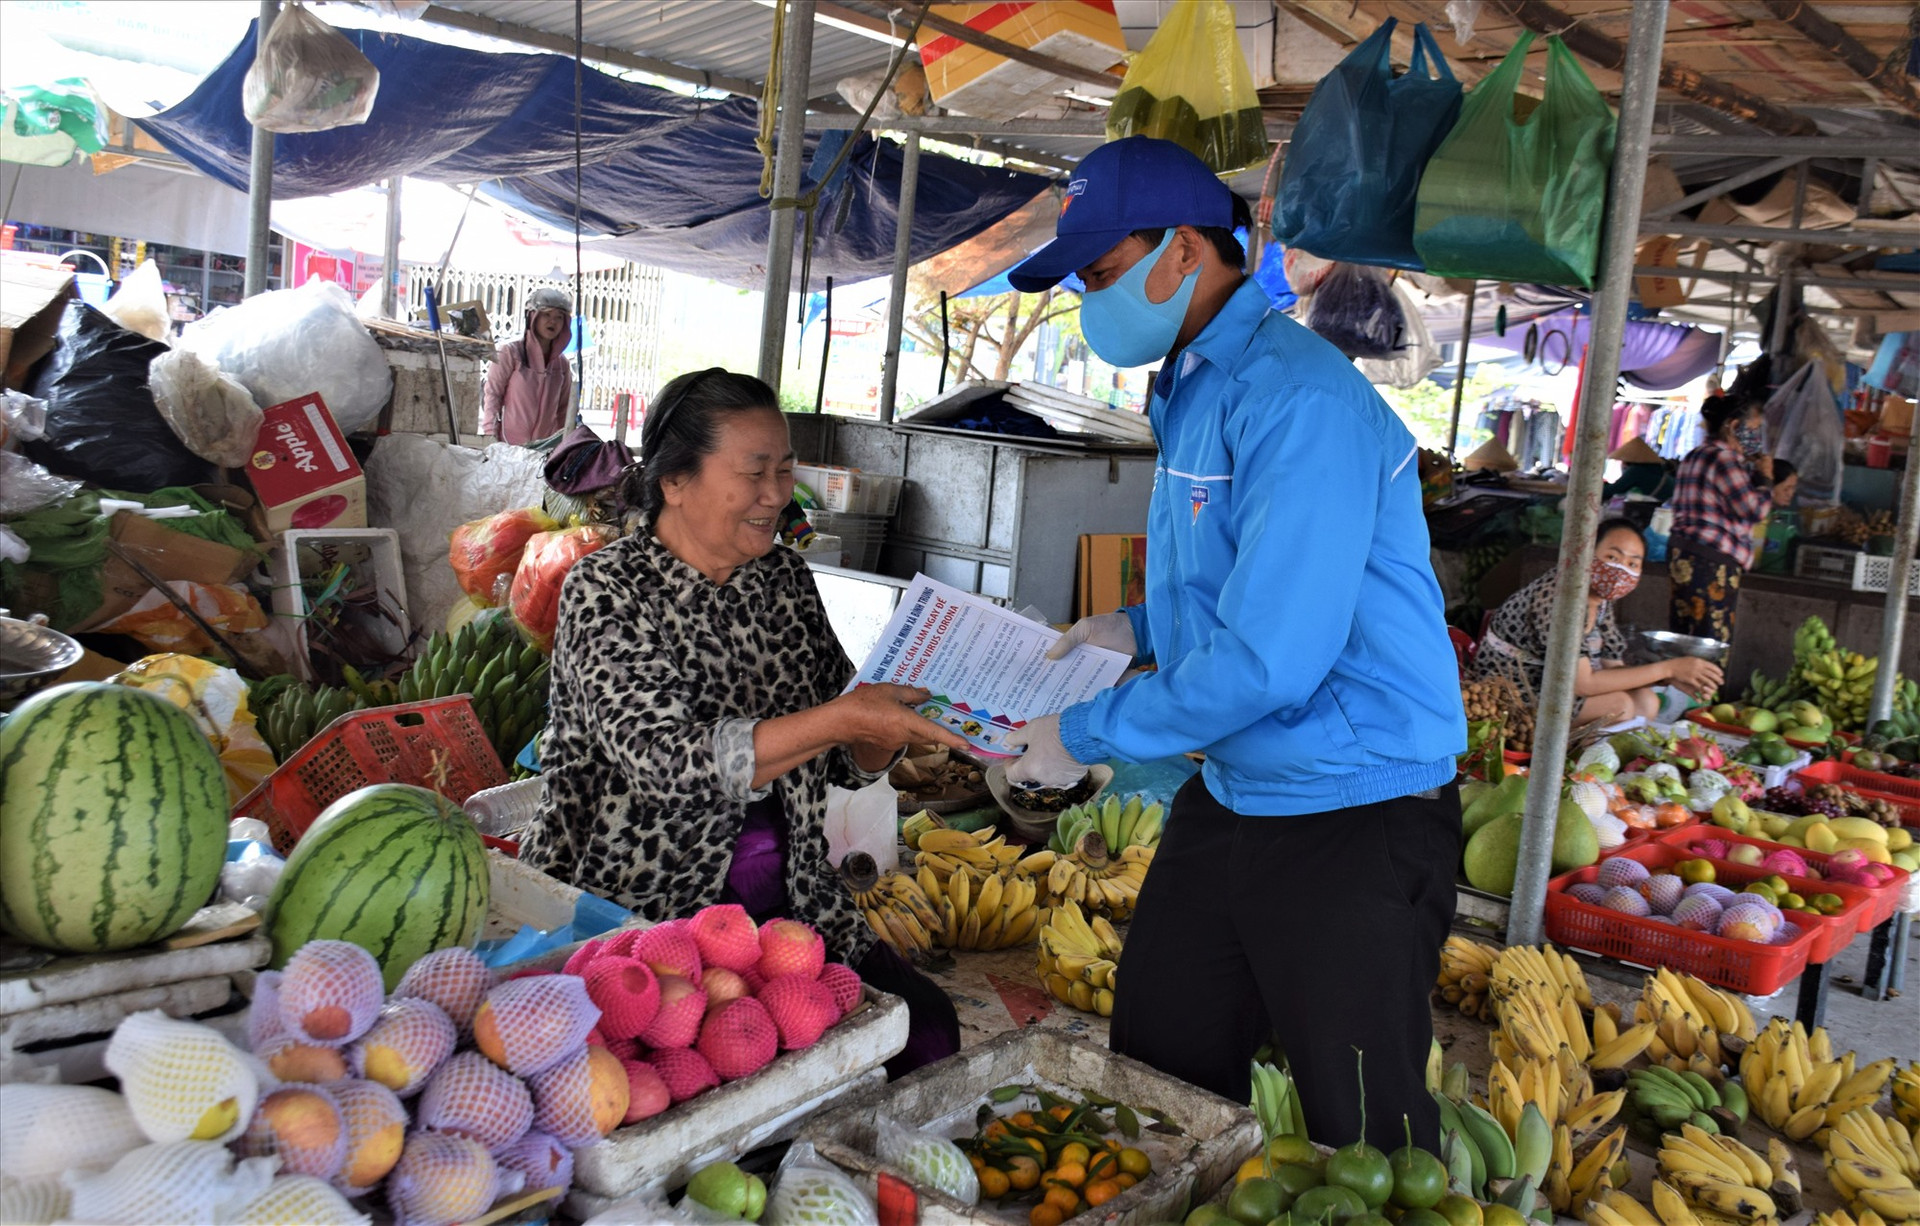 Cán bộ đoàn thanh niên xã Bình Trung, huyện Thăng Bình, phát tờ rơi và tuyên truyền cho tiểu thương tại chợ Kế Xuyên nên đeo khẩu trang tại những nơi công cộng hoặc đông người để phòng chống dịch bệnh Covid-19: Ảnh: THANH THẮNG